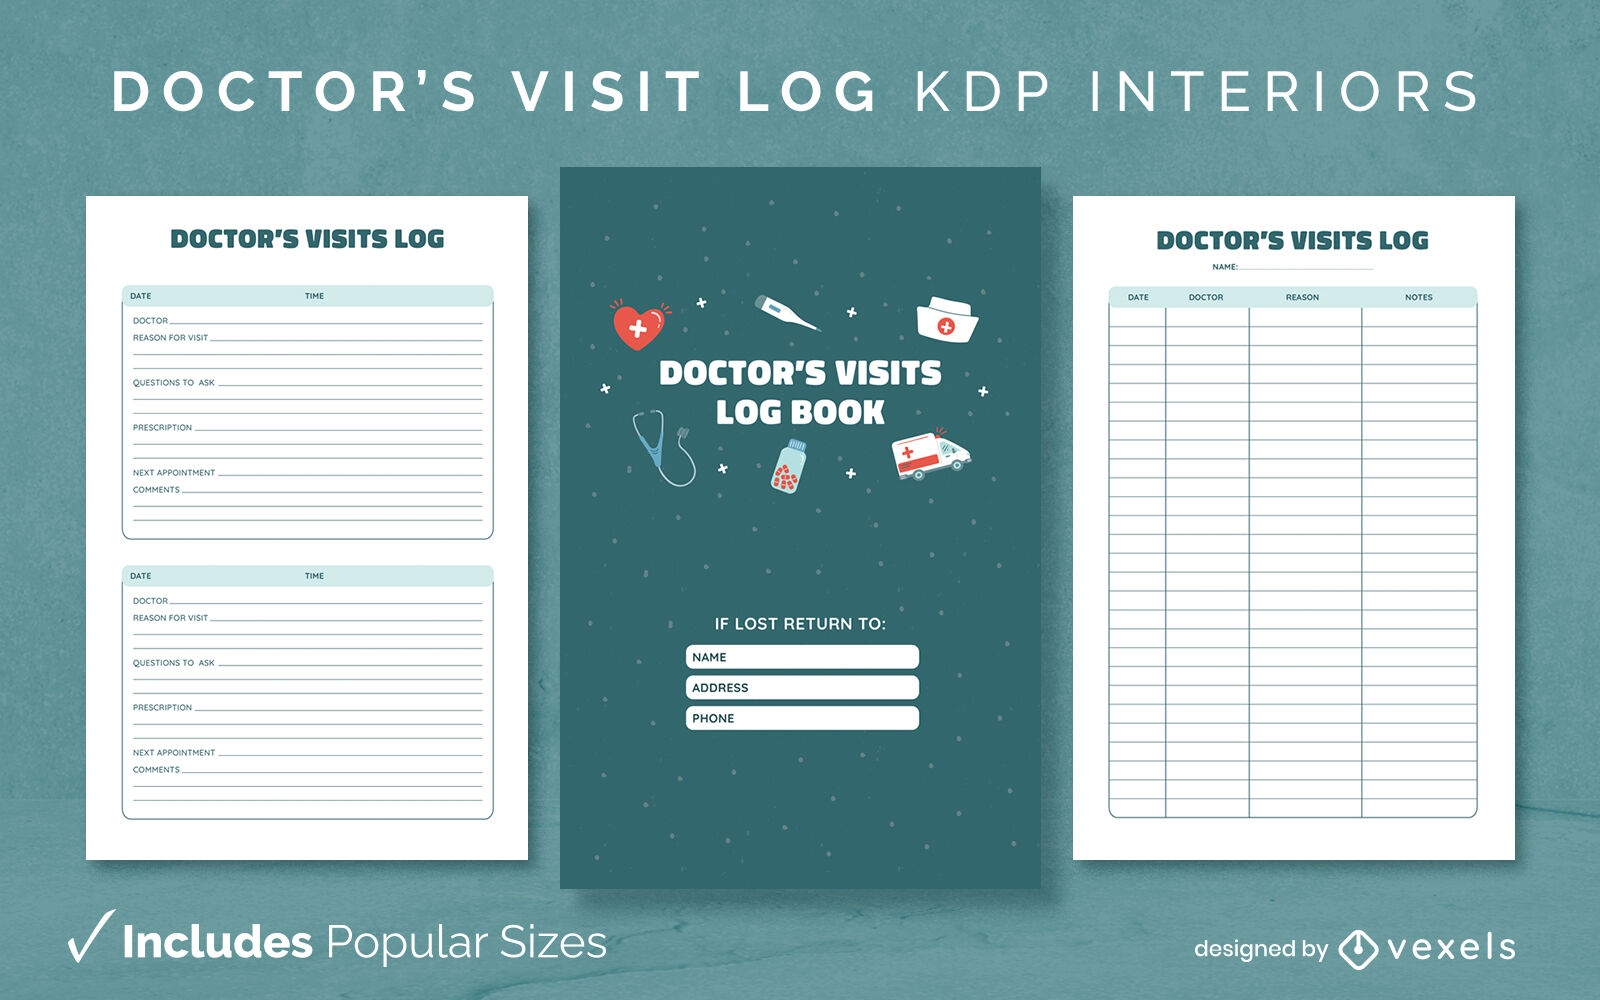 Doctor's visit log kdp interior design